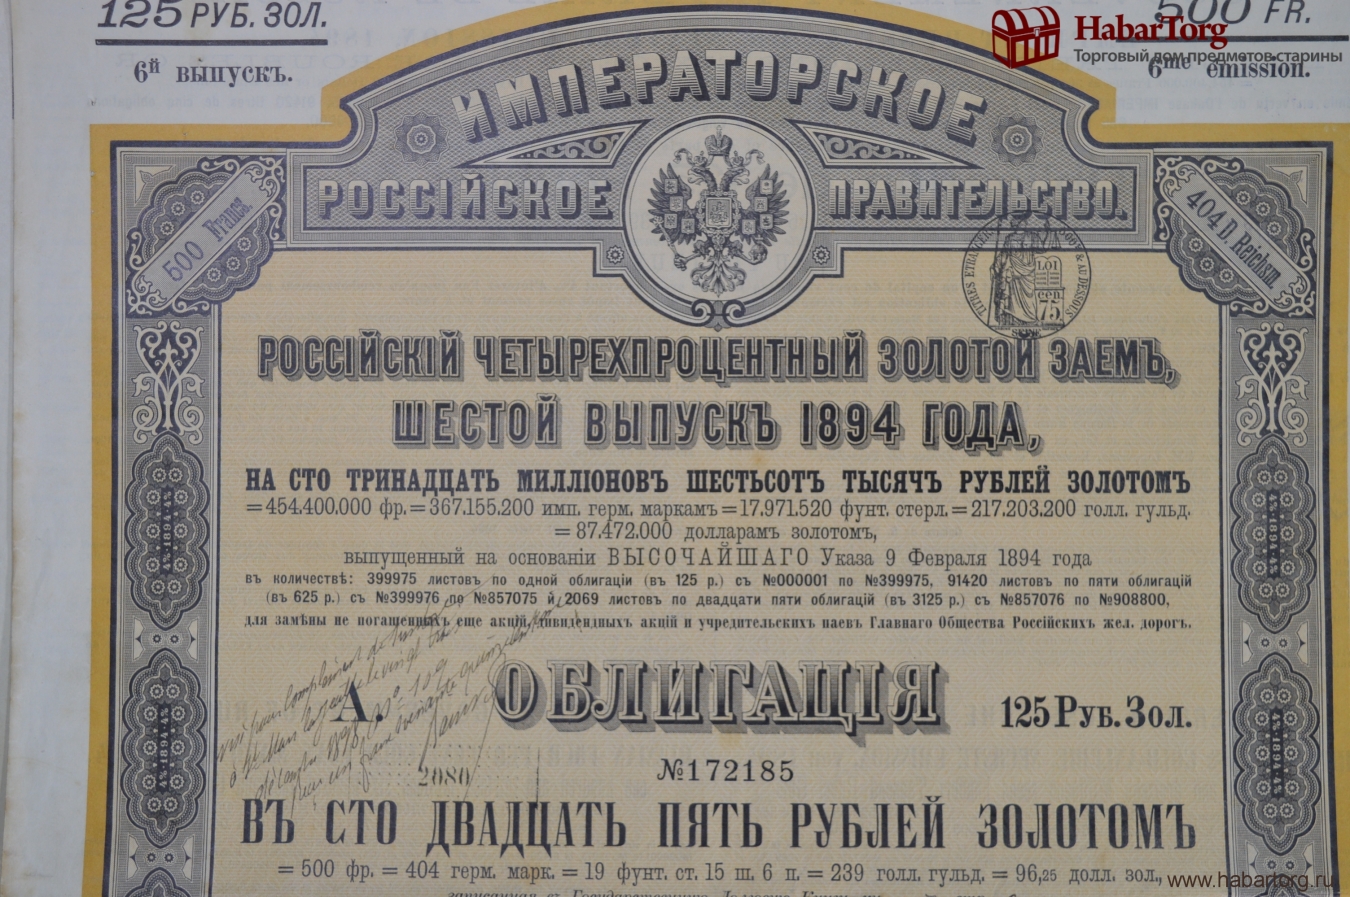 Облигациям и иным ценным бумагам. Облигации 1894 года. Облигация Железнодорожная 1894г. 4% Золотого займа 1890. Учредительская акция.